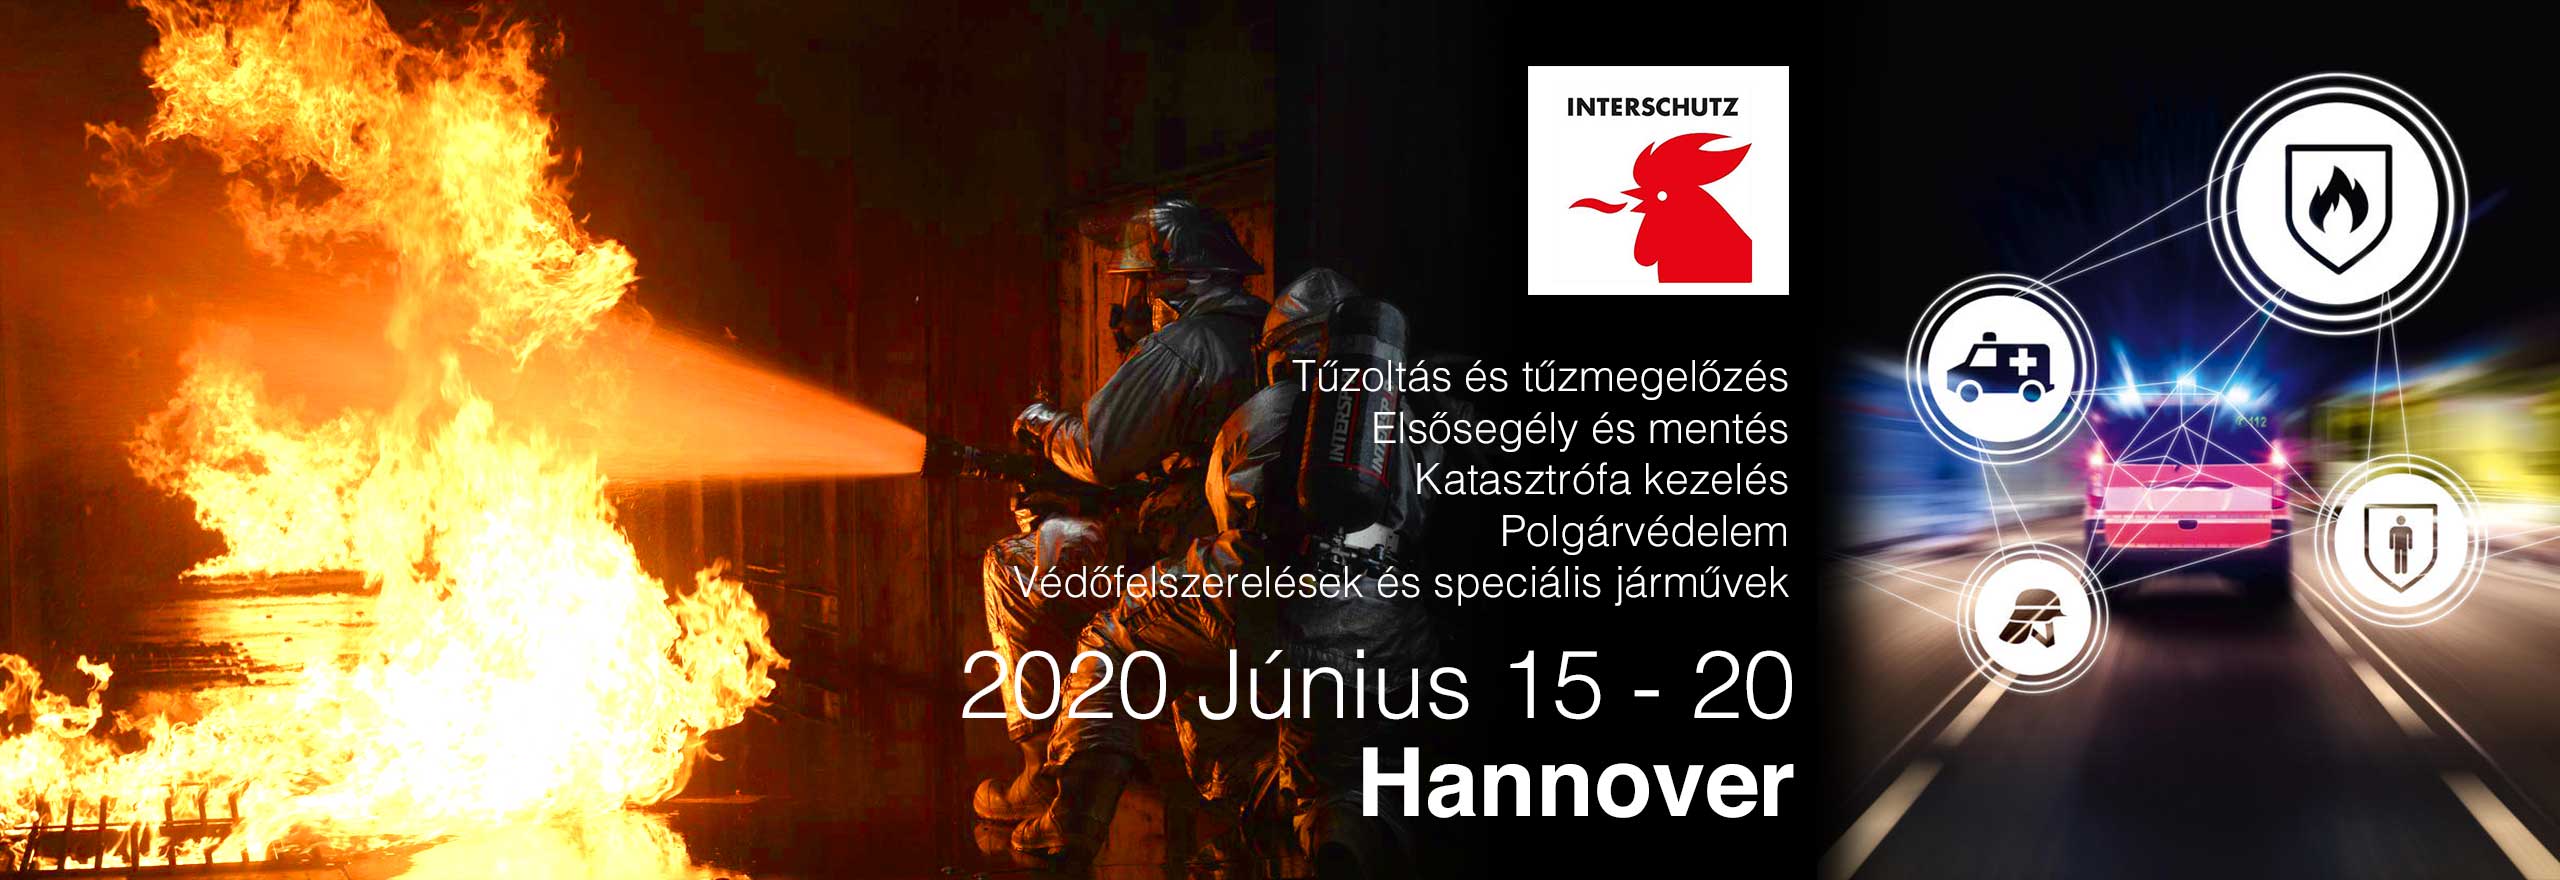 Hannover kiállítás Interschutz 2020